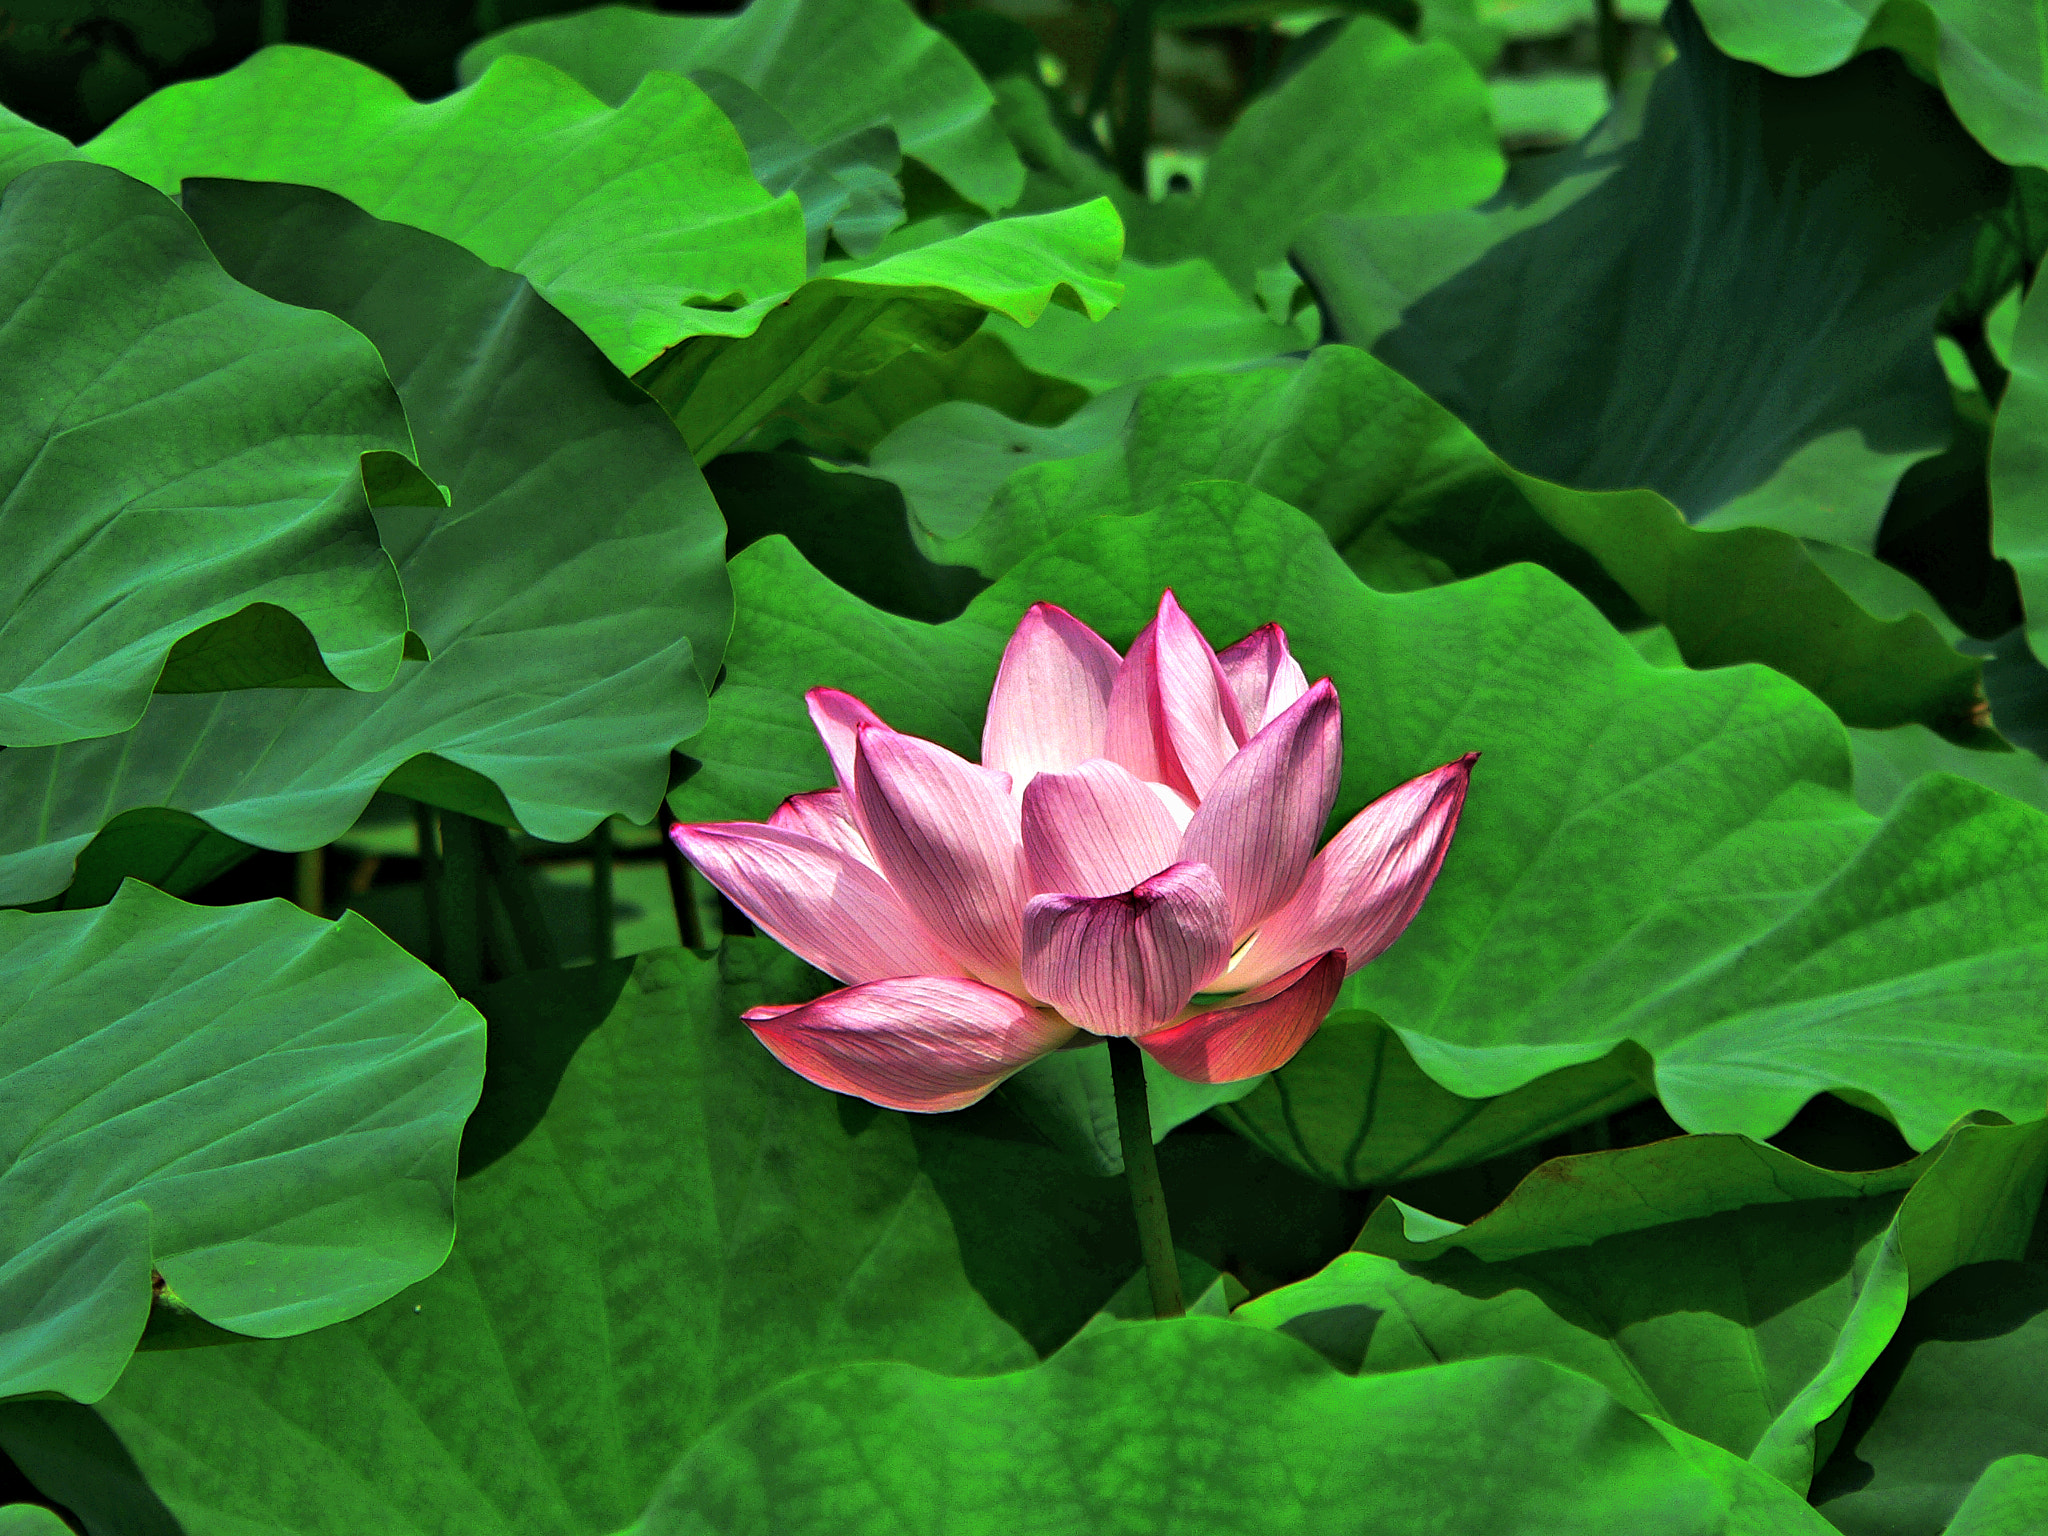 Panasonic DMC-FZ20 sample photo. Lotus flower photography